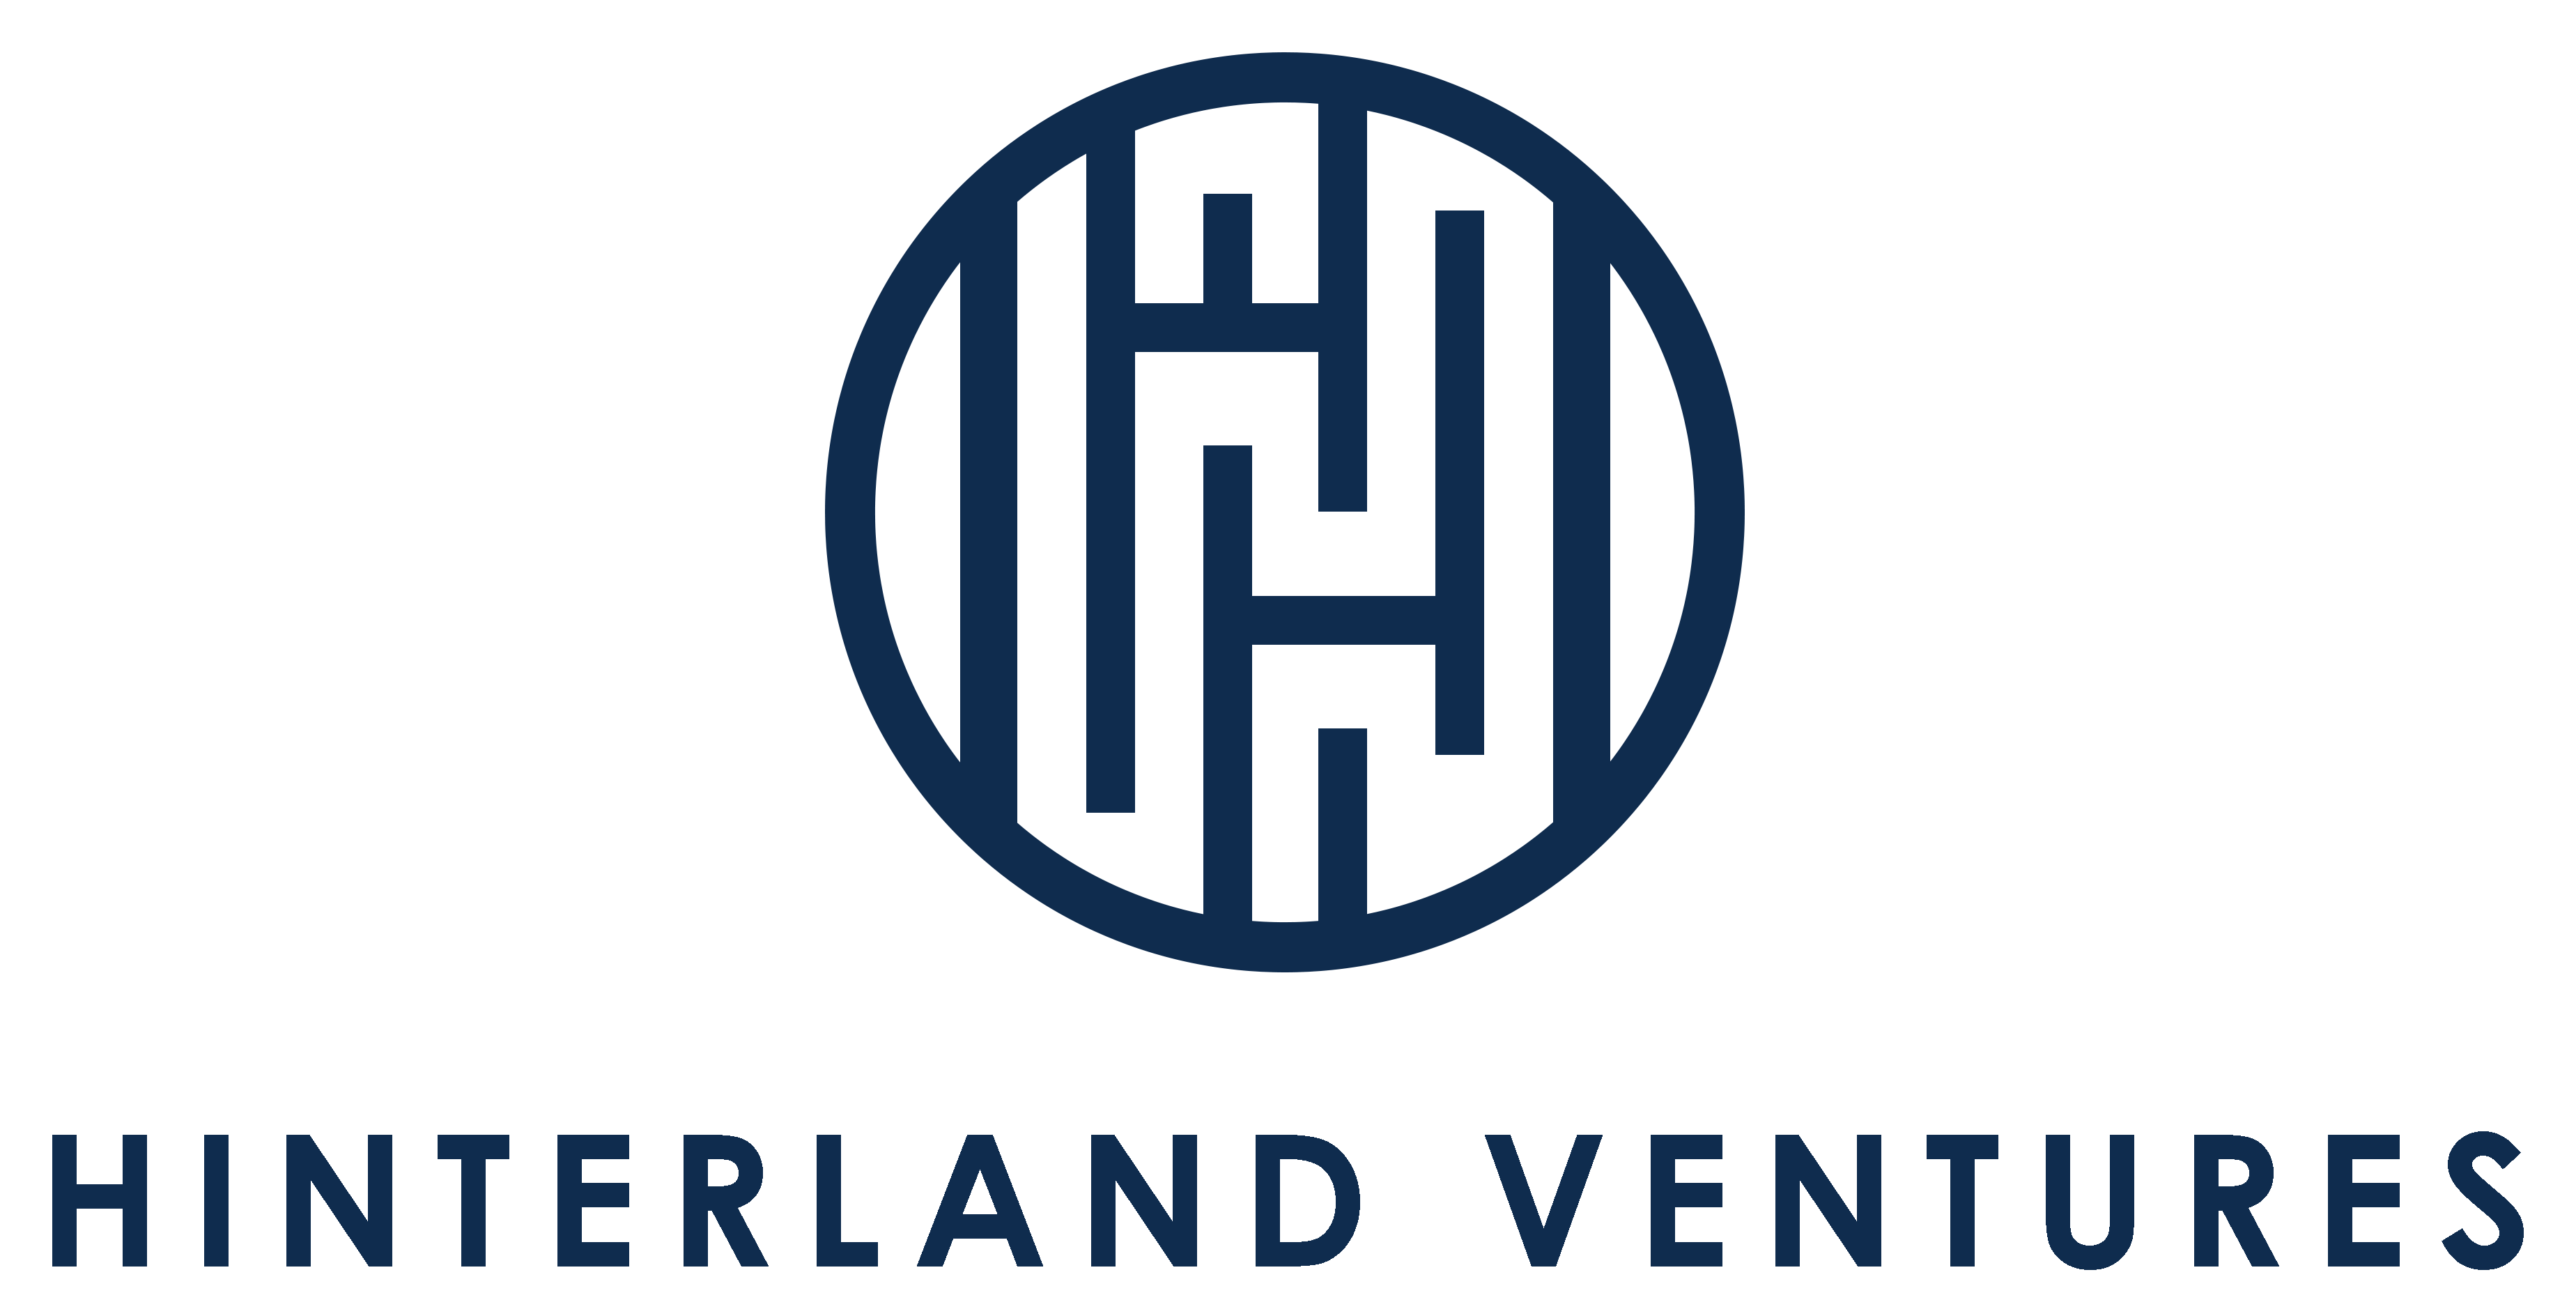 Hinterland Ventures